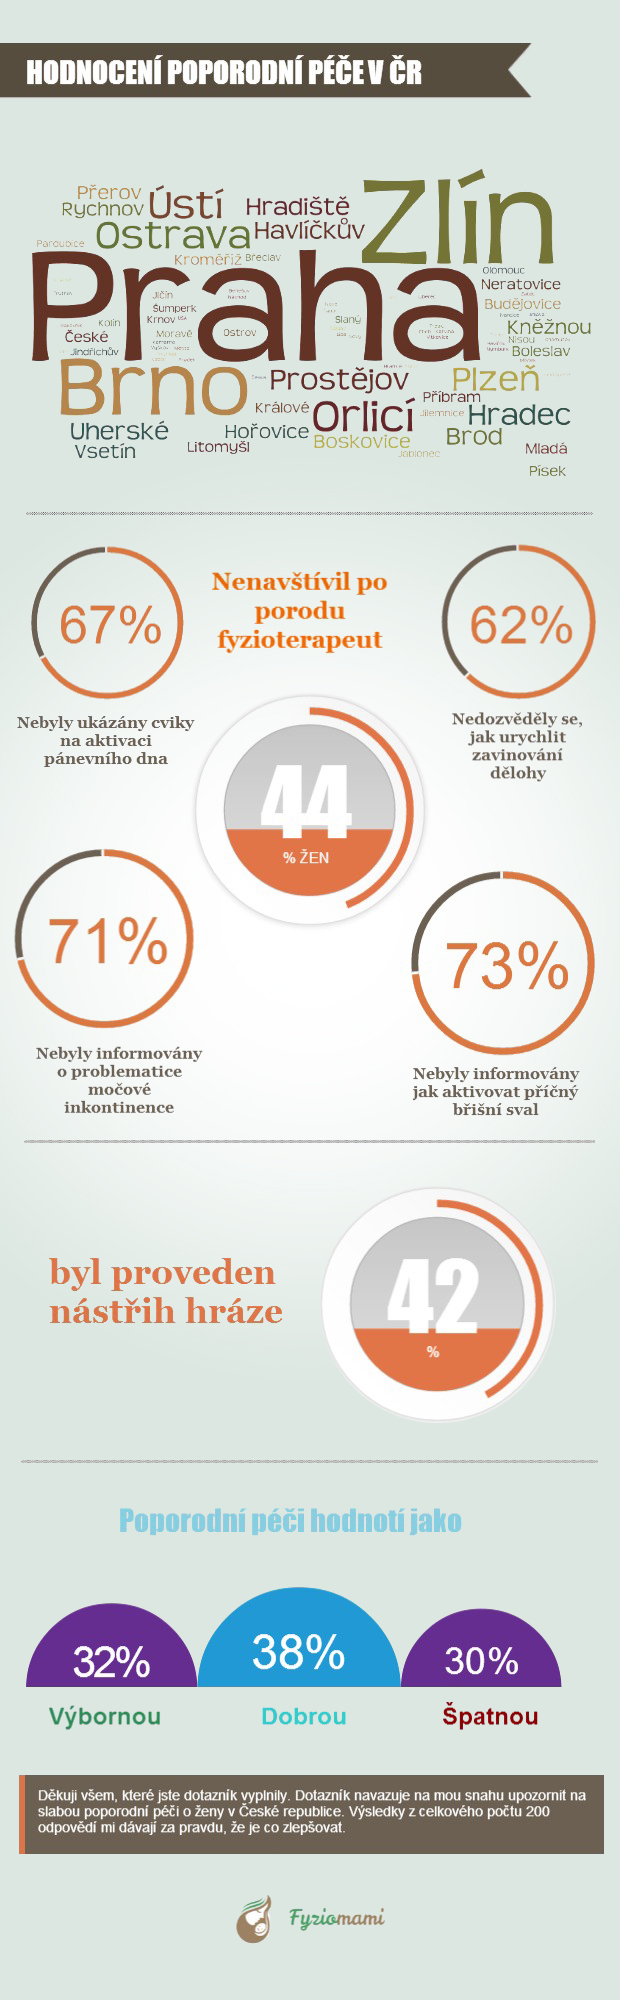 Hodnocení poporodní péče v ČR - infografika